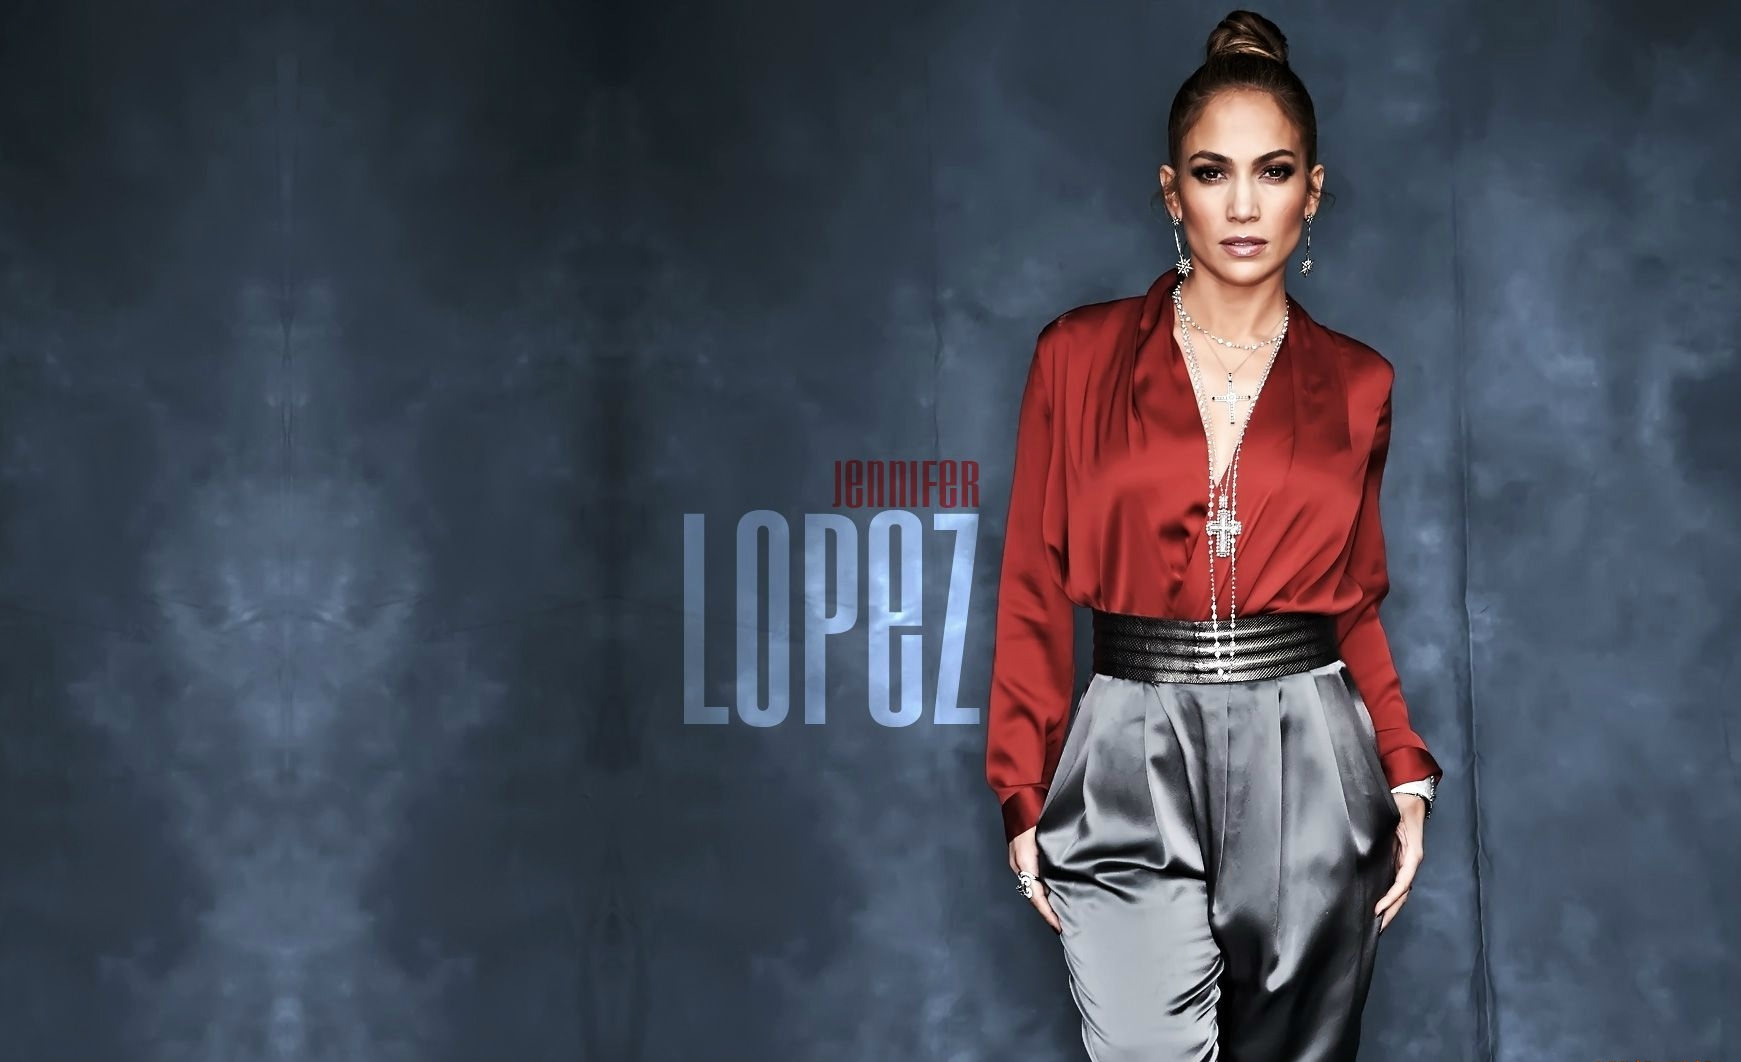 Free Images  Jennifer Lopez